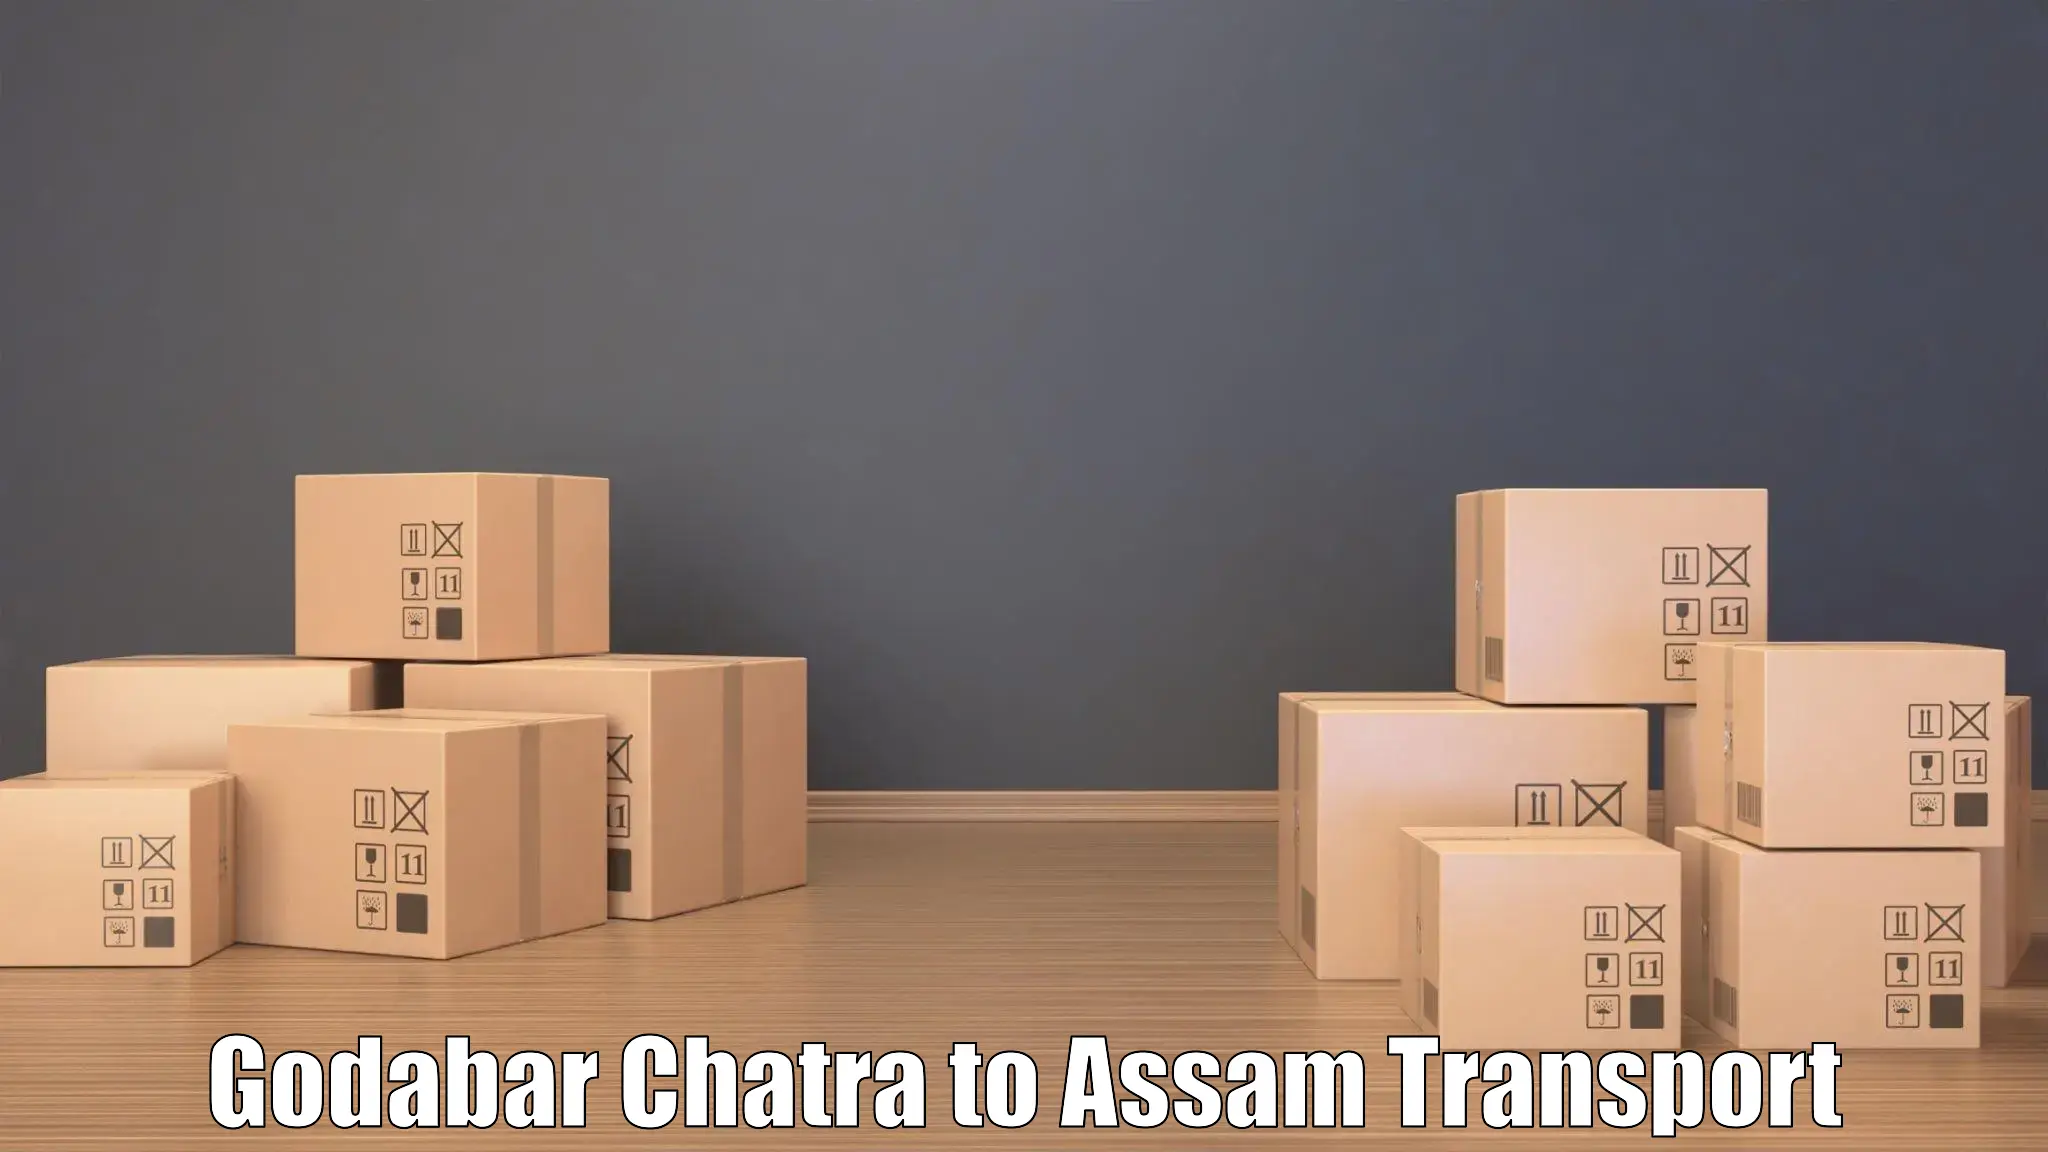 Daily transport service Godabar Chatra to Doom Dooma